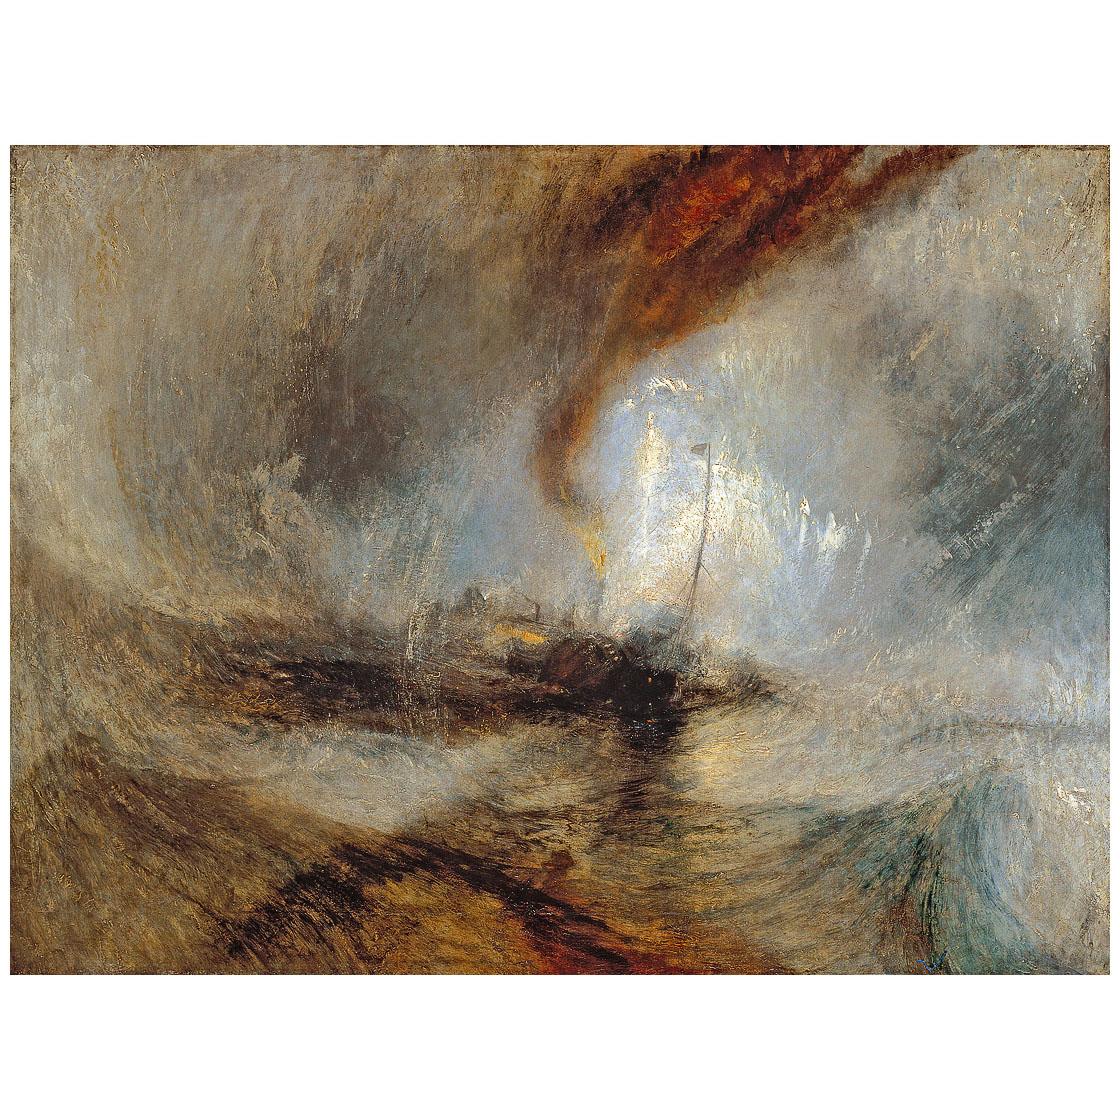 William Turner. Snow Storm. 1842. Tate Britain